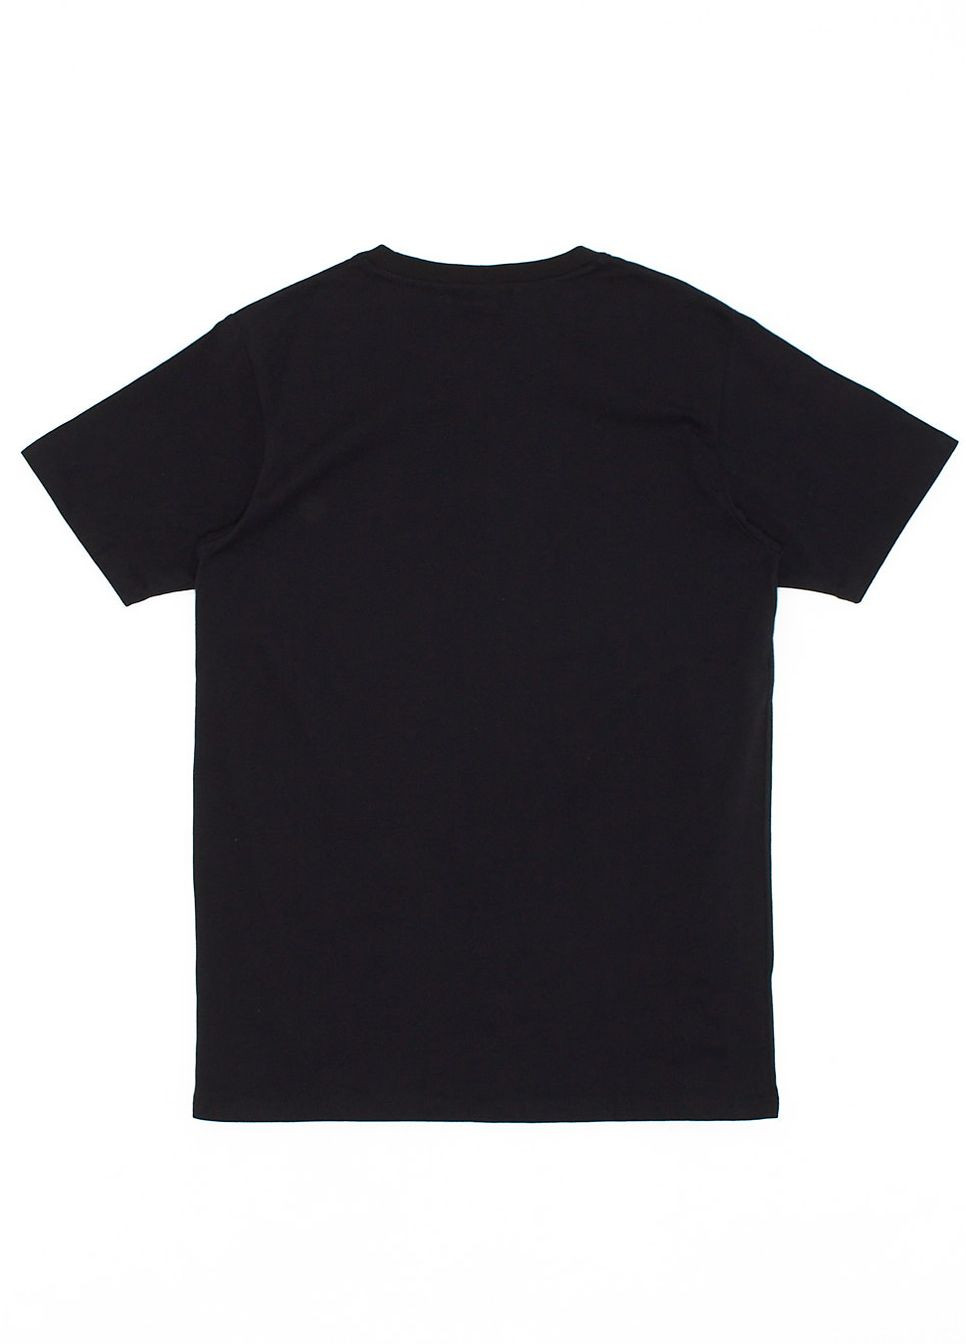 Черная футболка,черний с принтом, Wesc